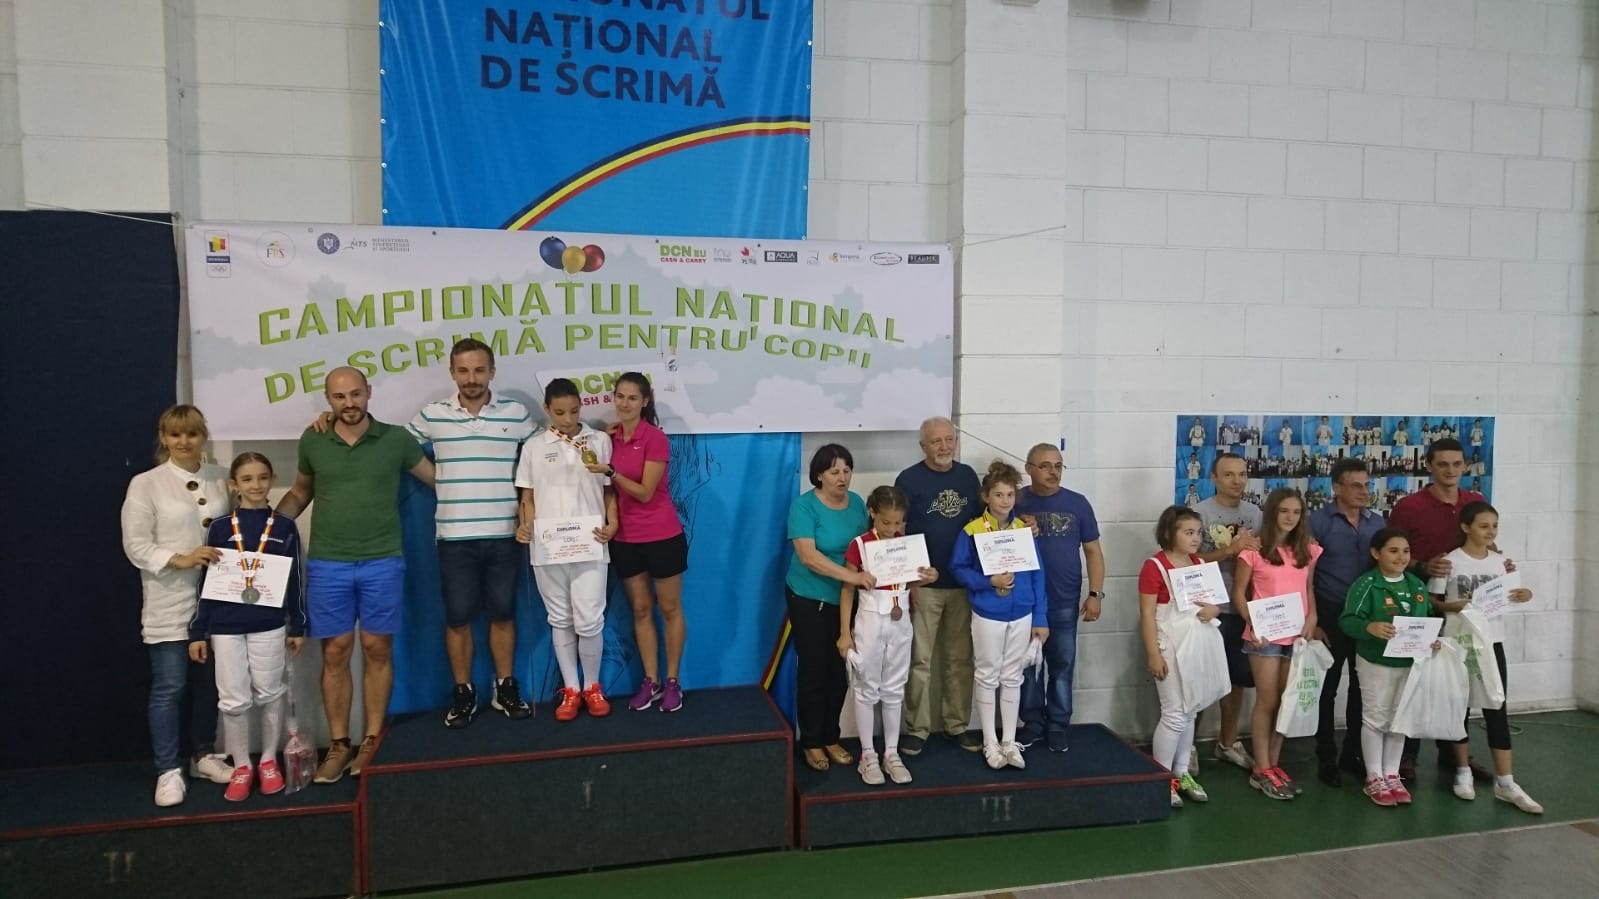 Miruna Ștefania Husu (ACS Floreta Timișoara) a câștigat Campionatul Național de scrimă pentru copii de la București, ediția 2018, în proba de floretă feminin, la categoria 10-11 ani